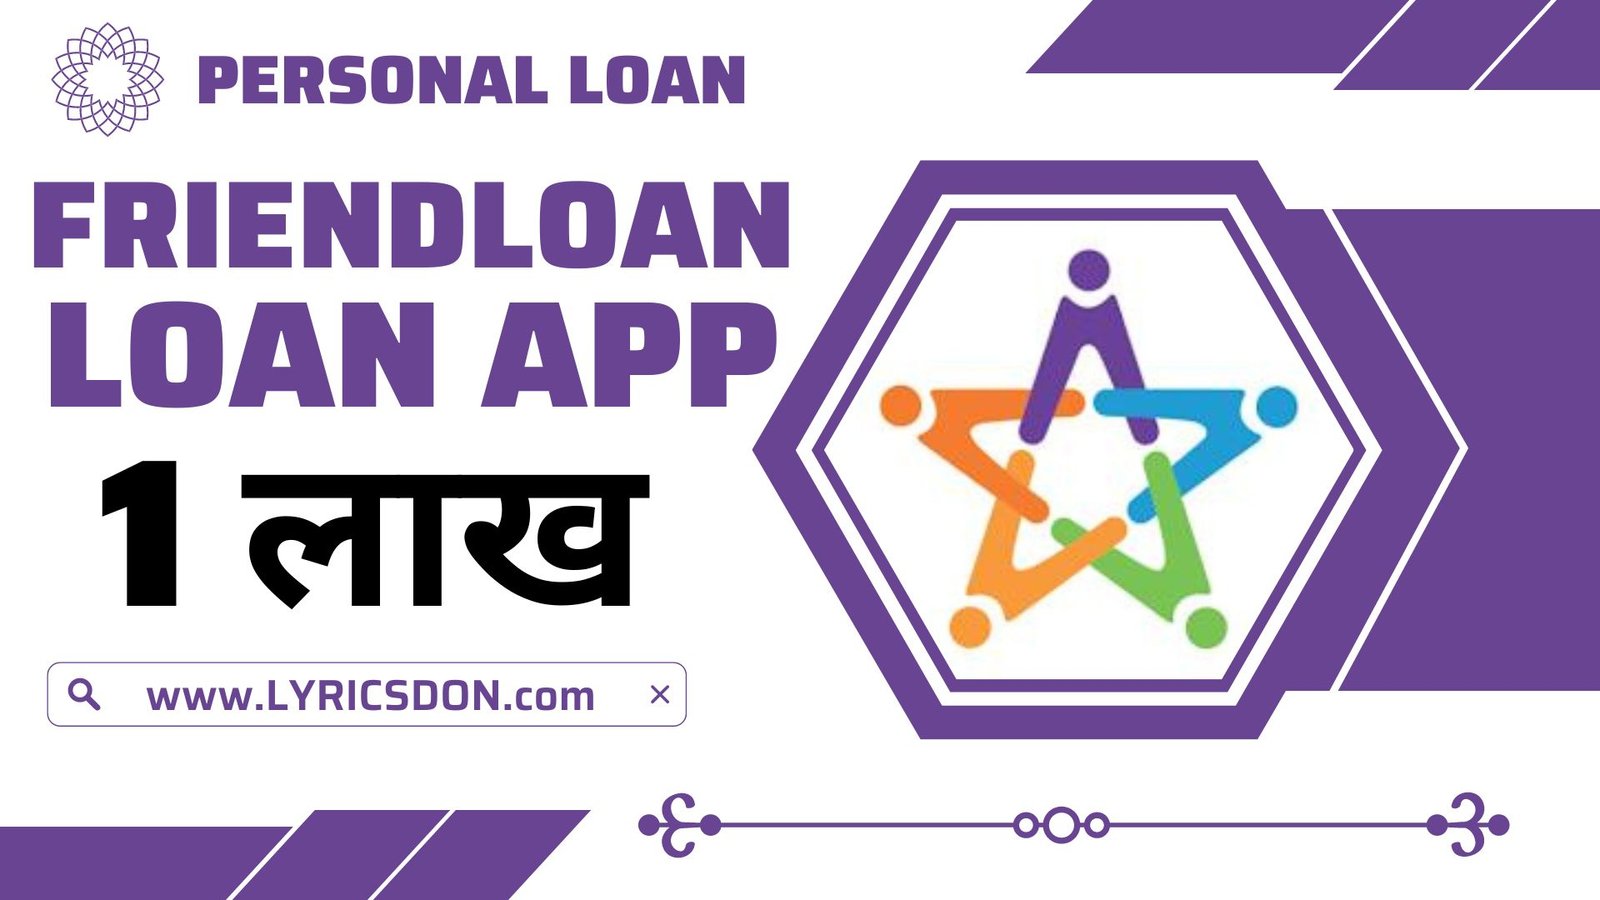 FriendLoan App Loan Amount